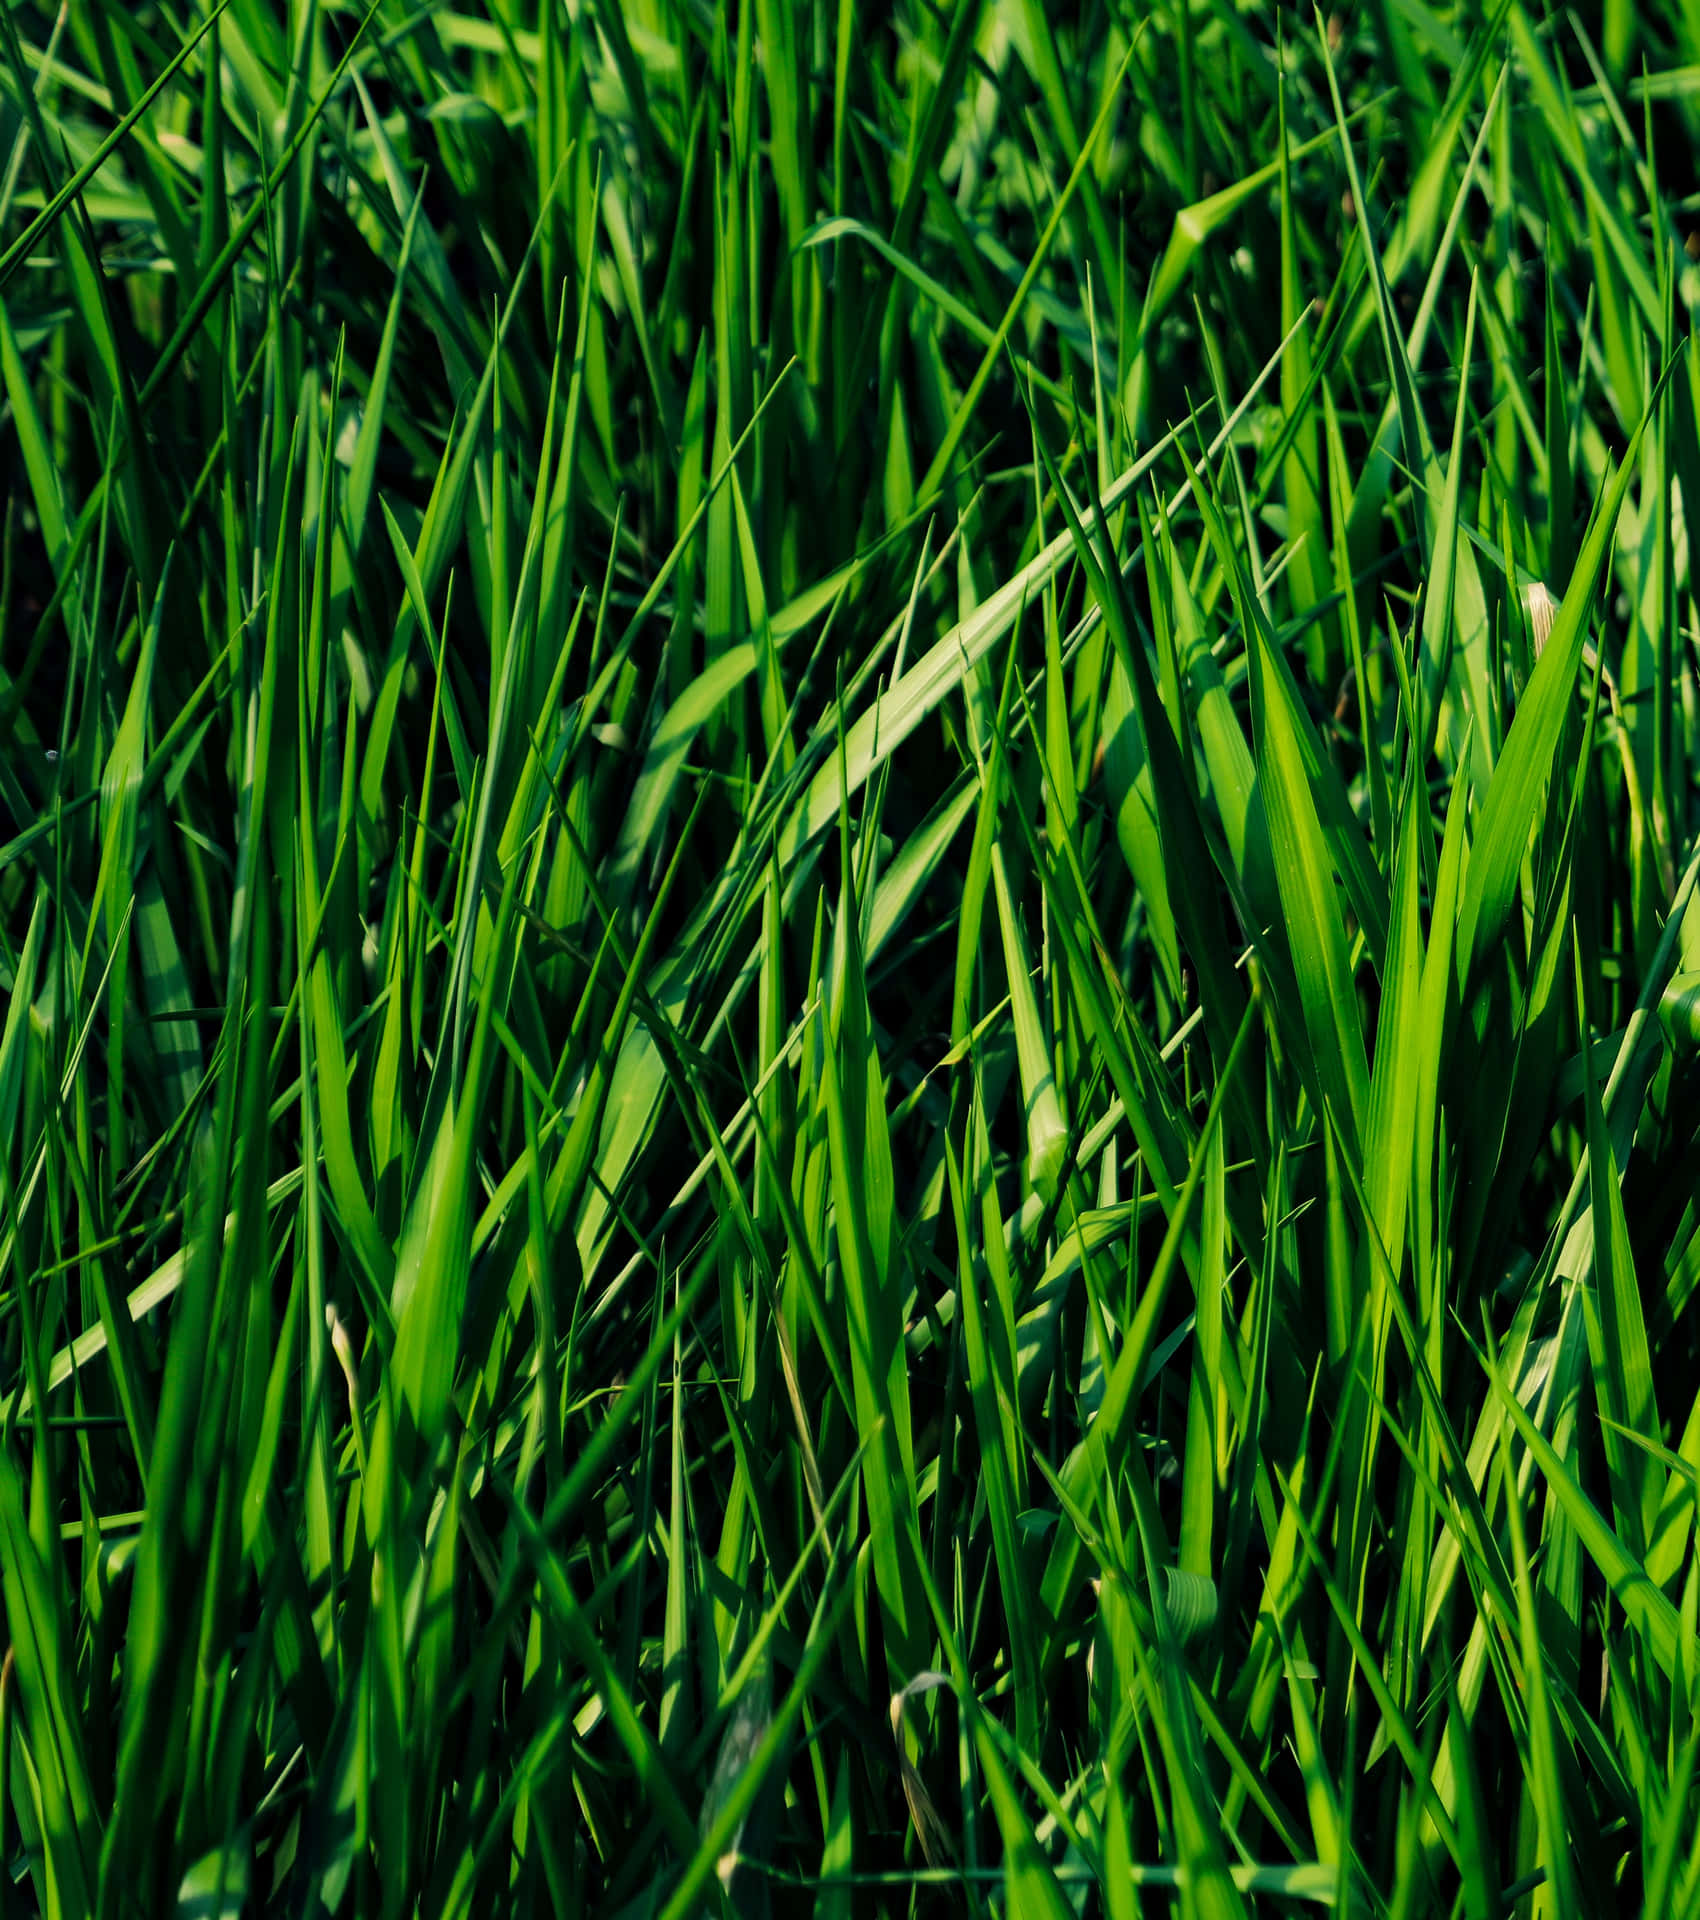 Vibrant Green Grass Texture.